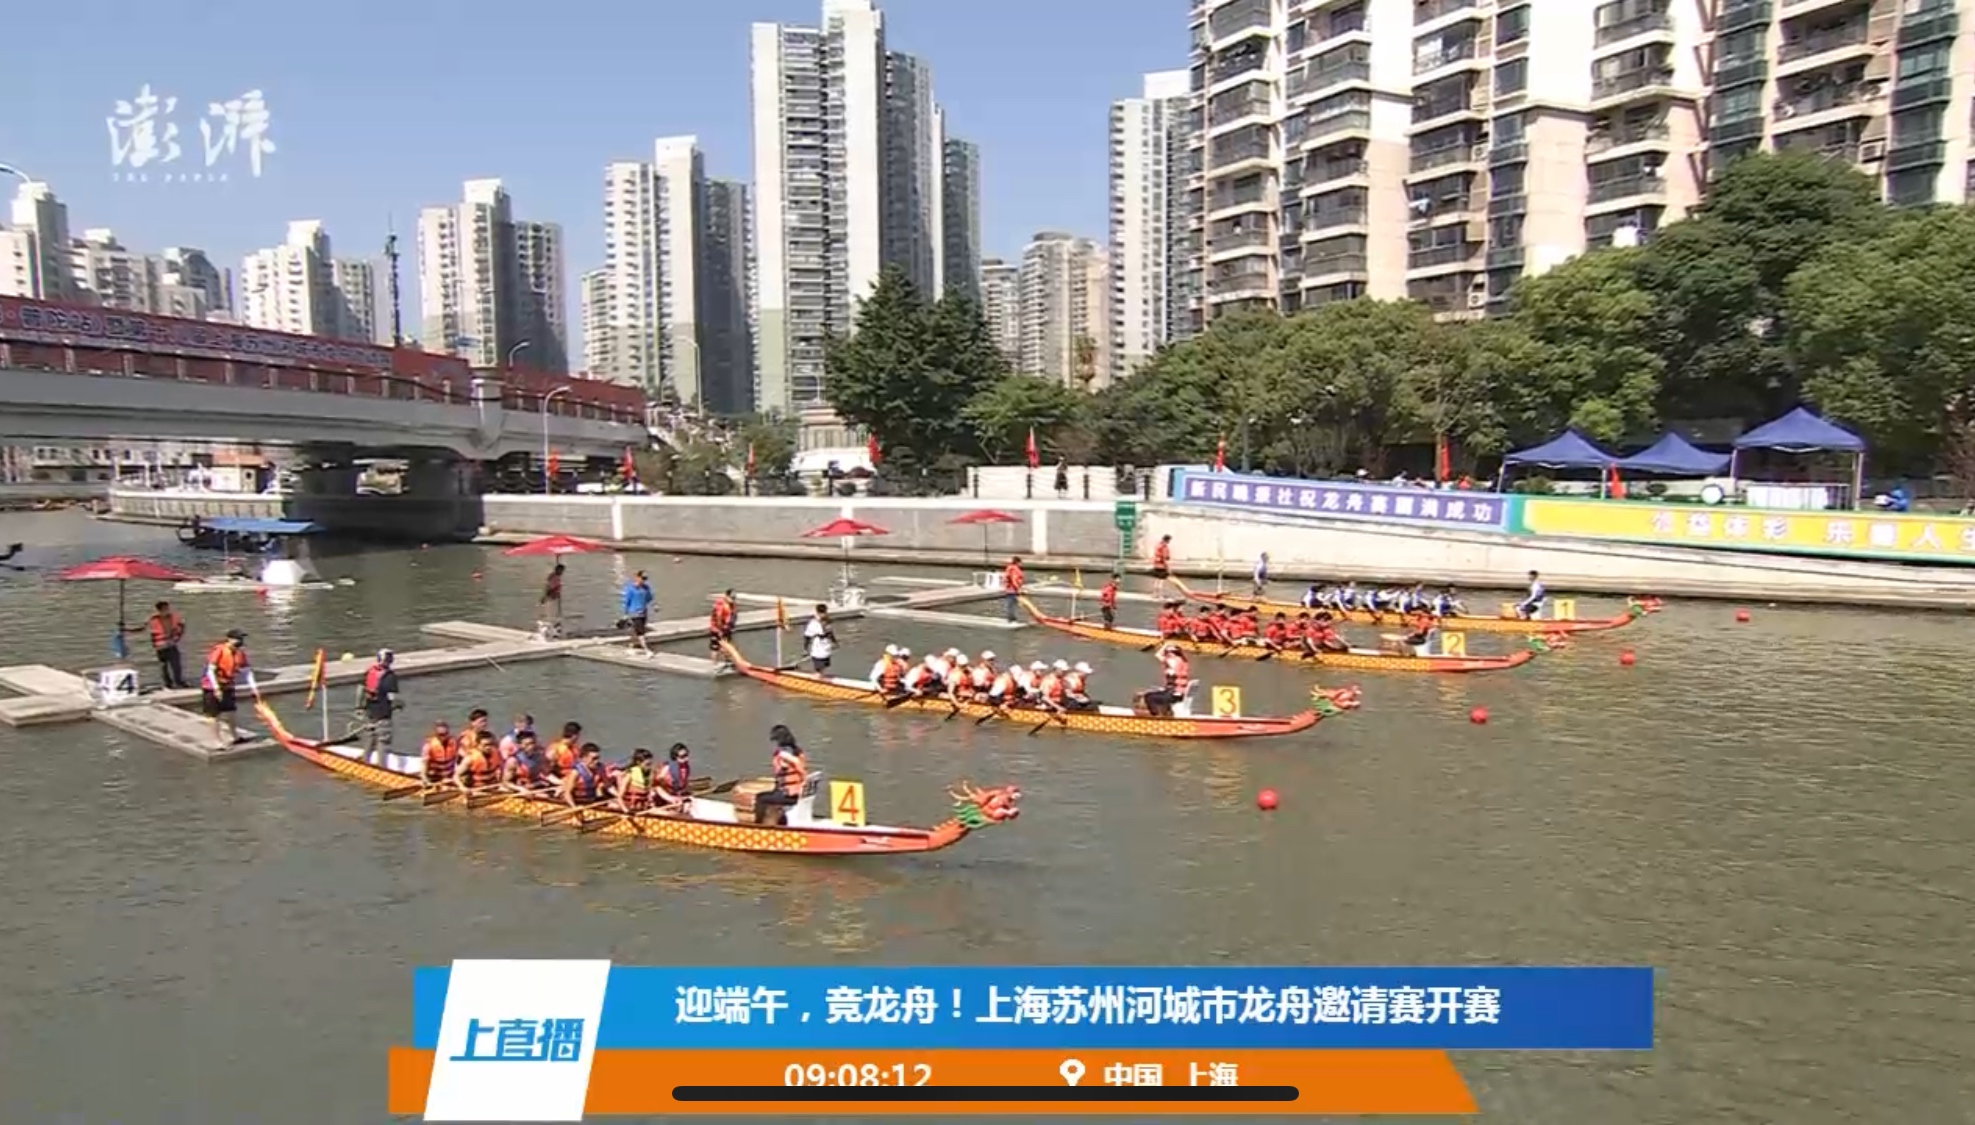 苏州金鸡湖端午龙舟赛举行 63支队伍挥桨竞逐